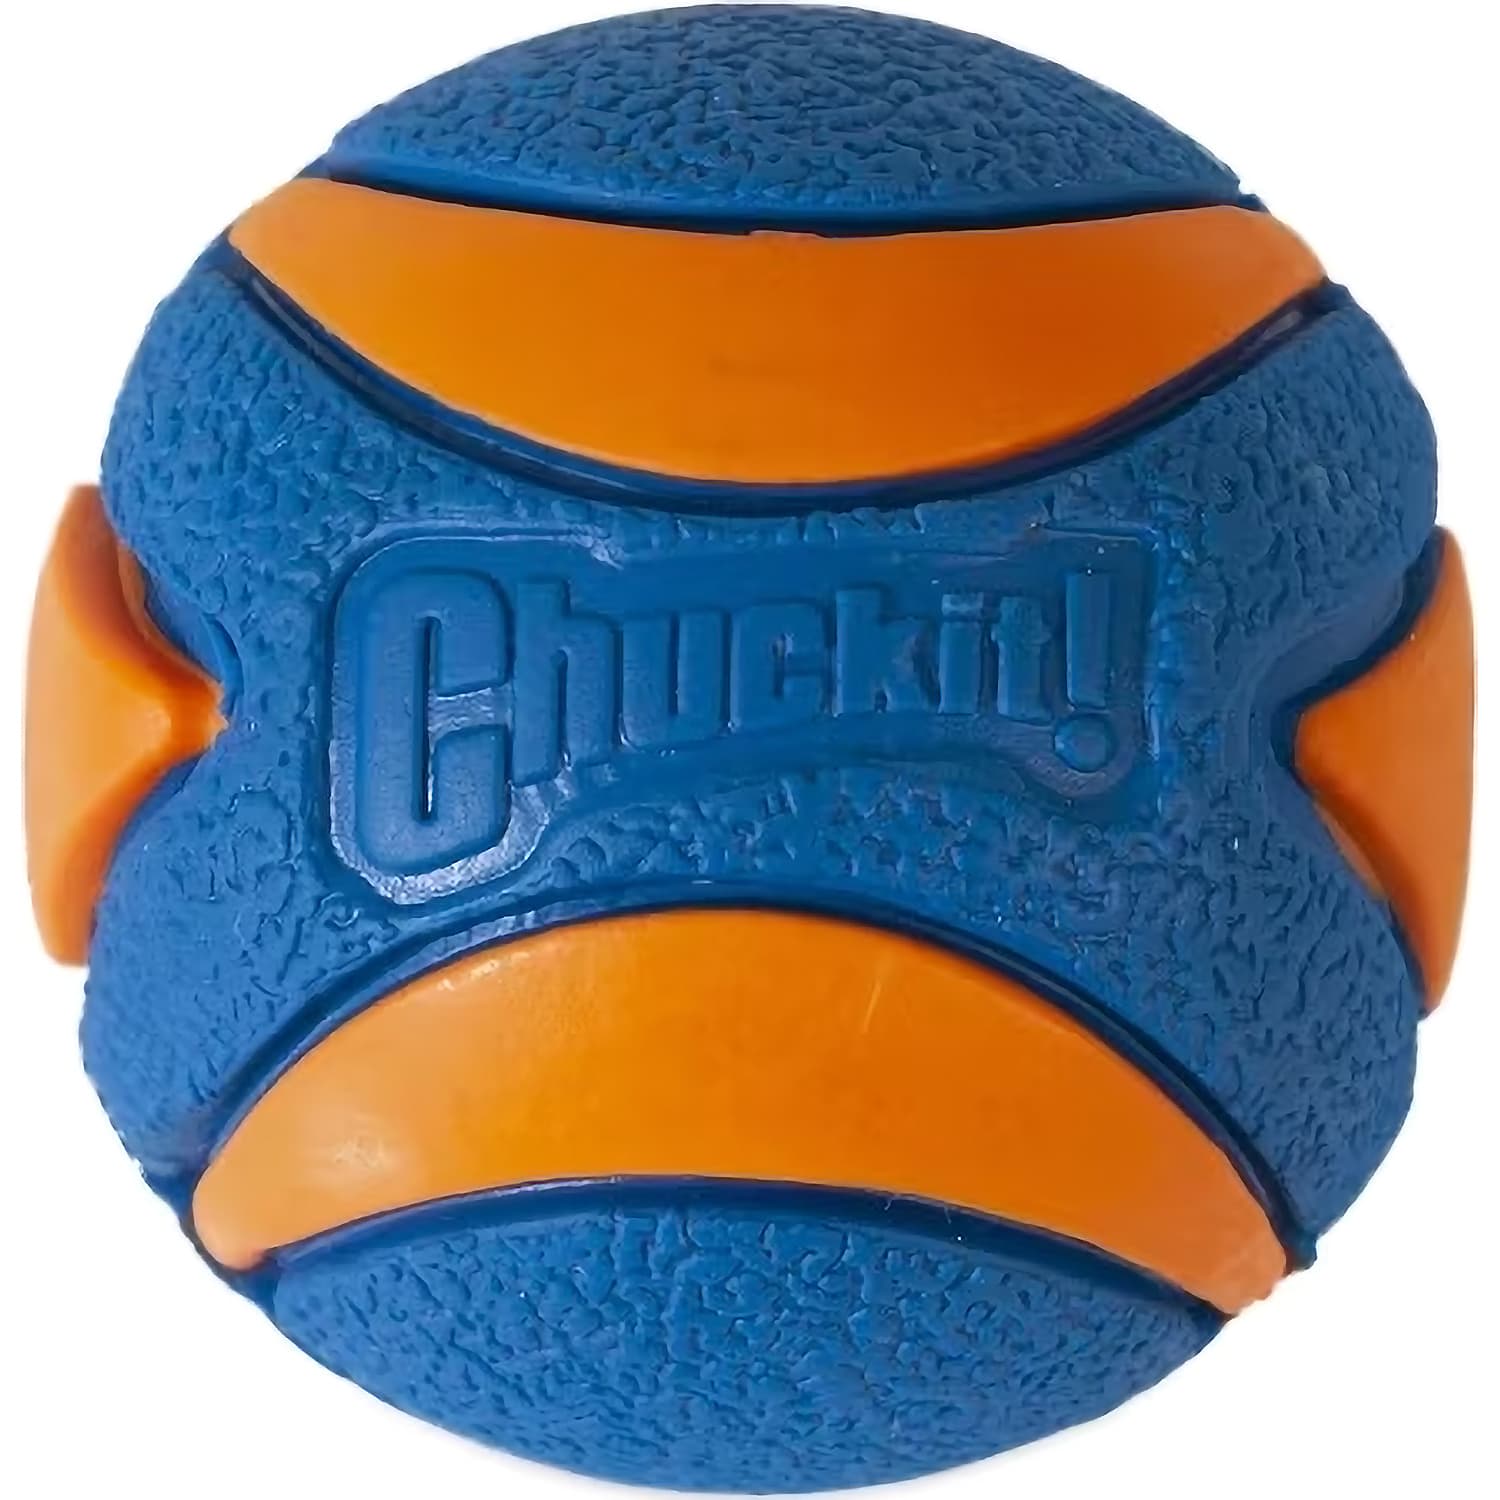 Chuckit! Ultra Squeaker Ball